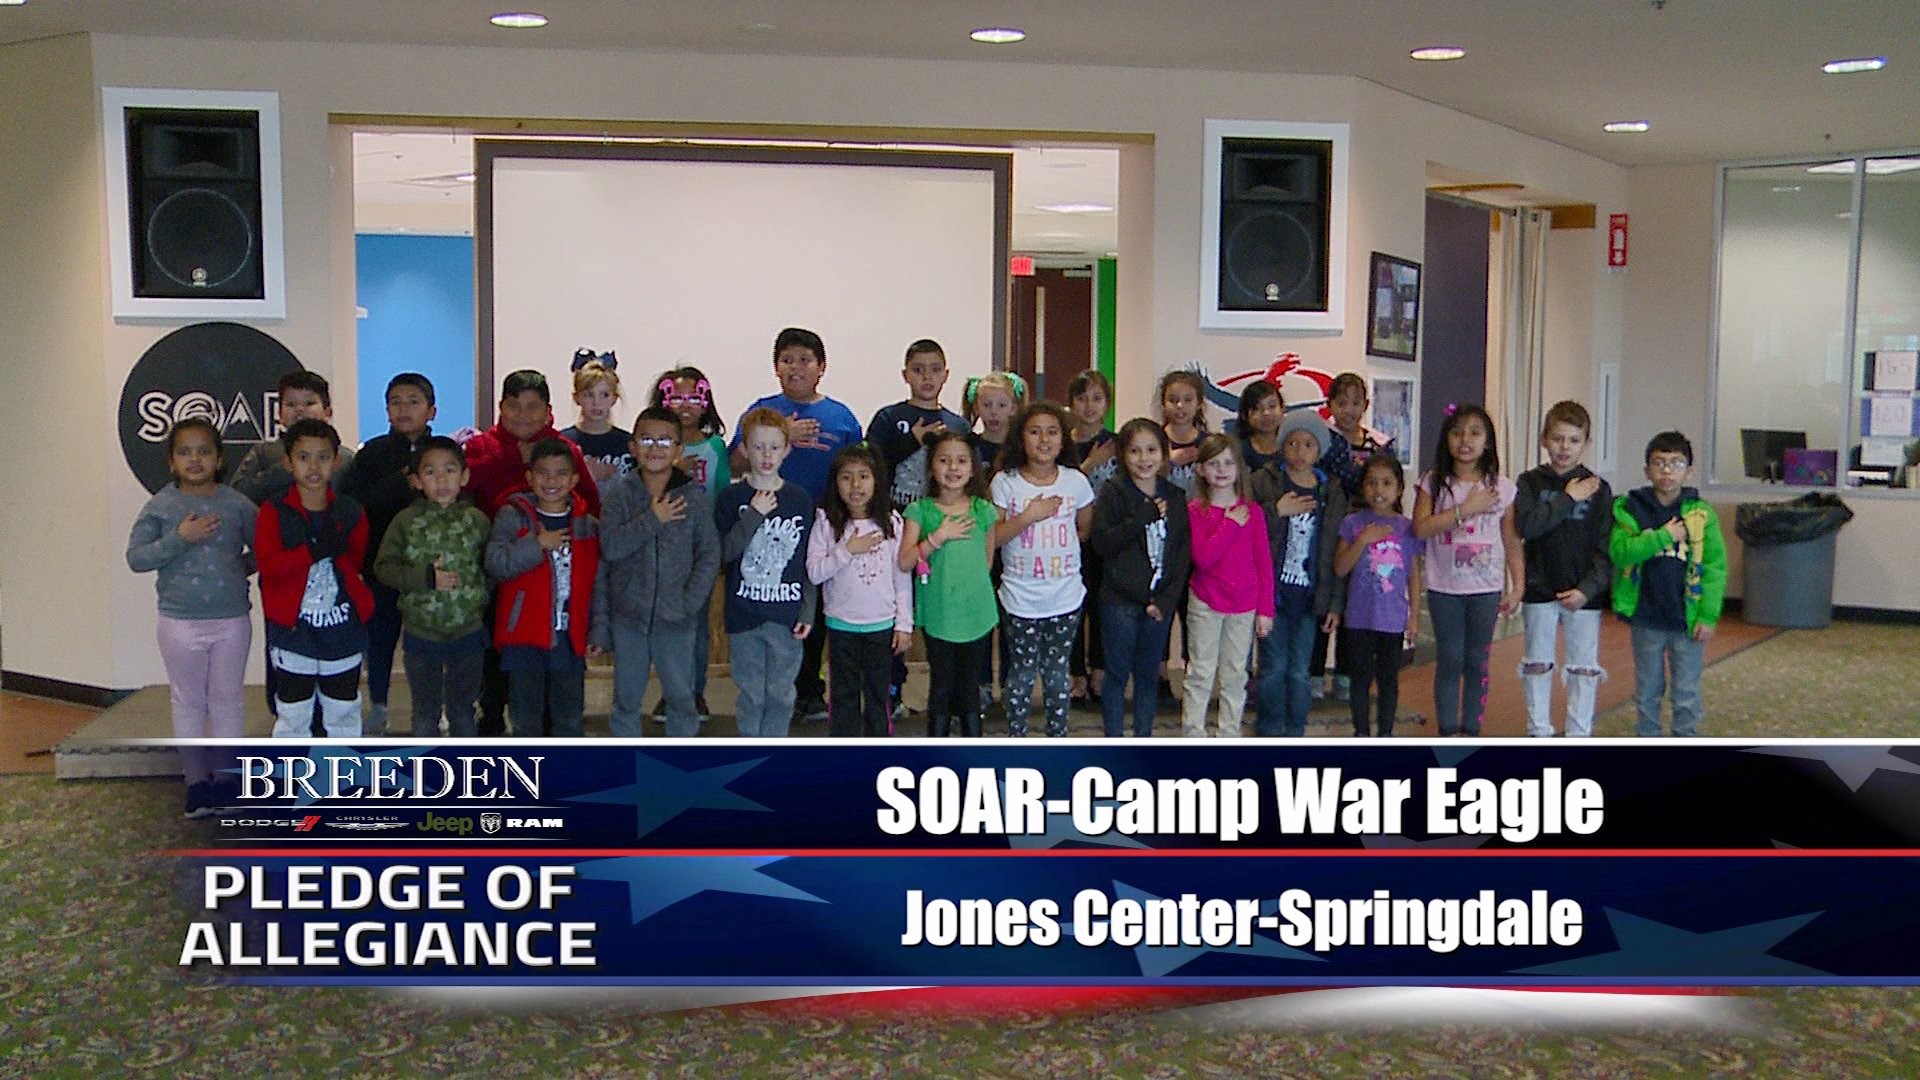 Soar-Camp War Eagle Jones Center, Springdale